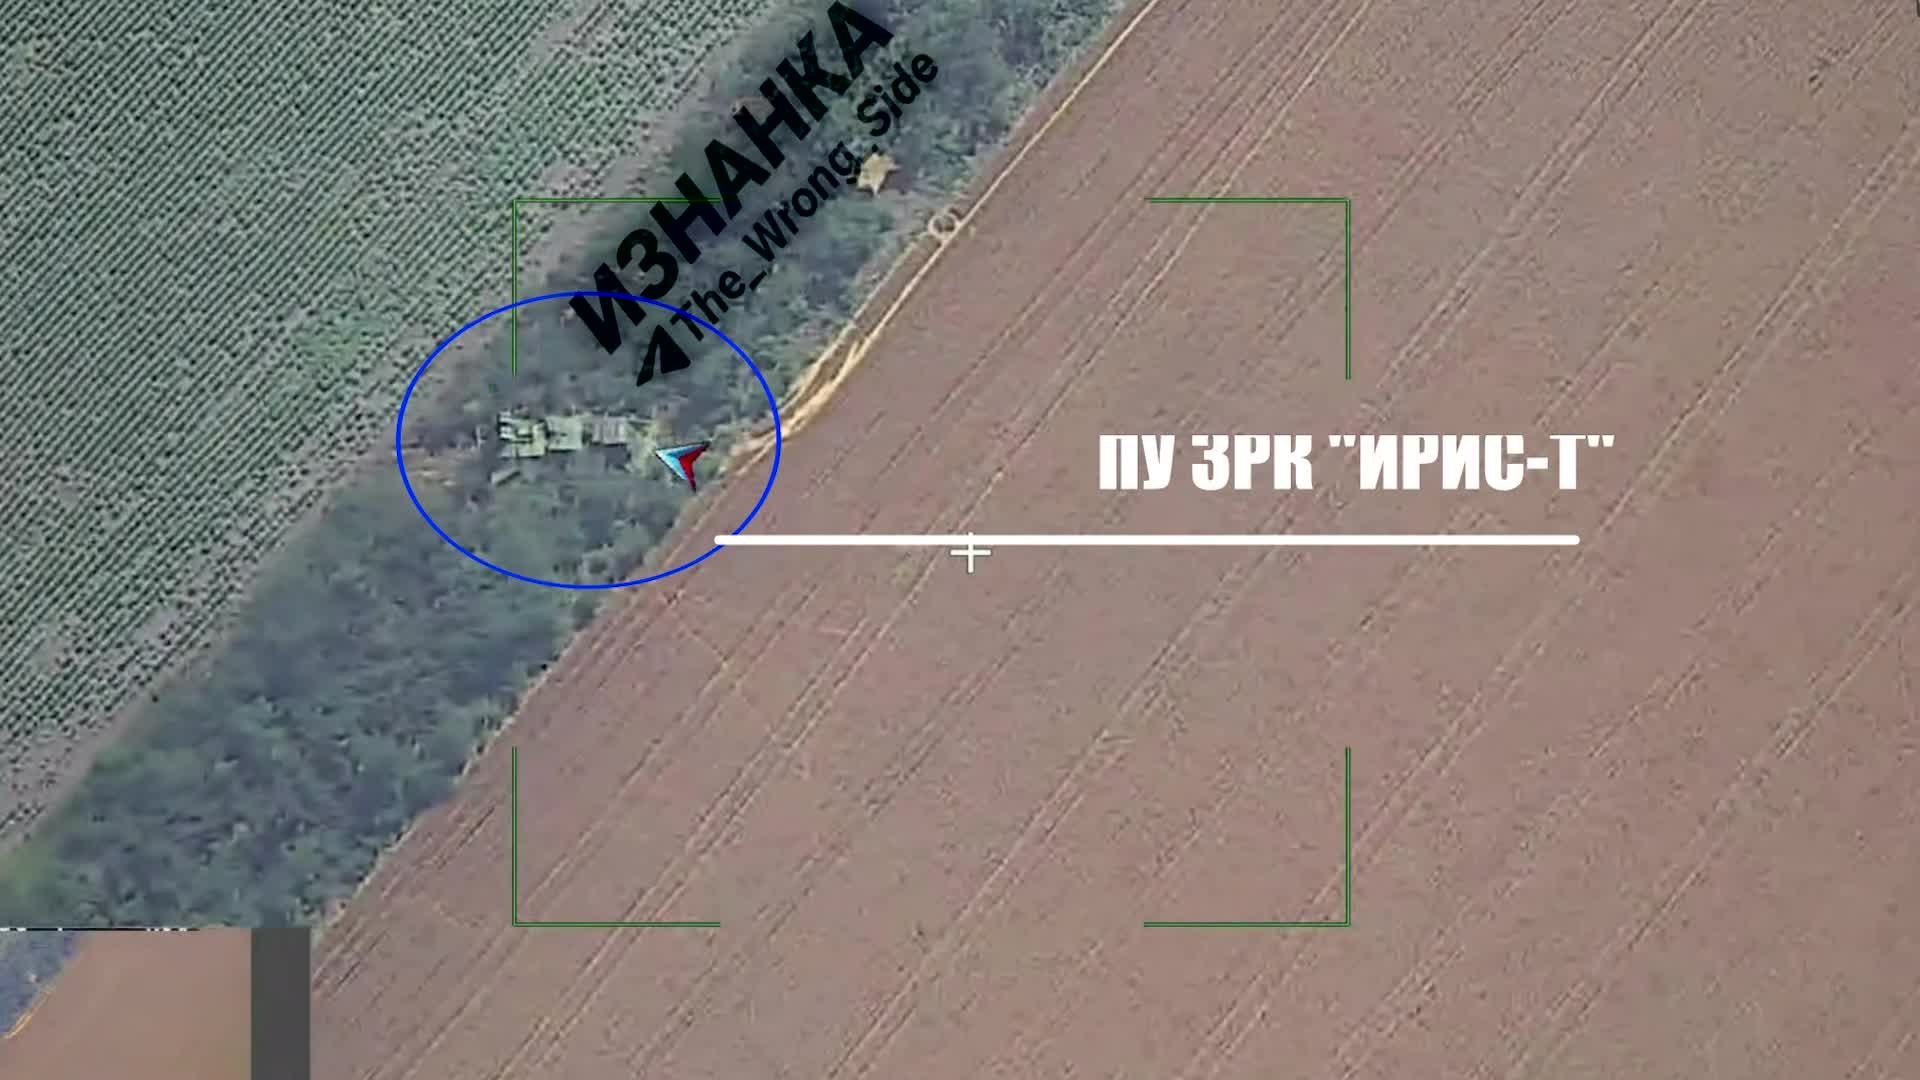 Thế giới - Khoảnh khắc tên lửa đạn đạo Nga phá huỷ hệ thống phòng không công nghệ cao Iris-T của Ukraine